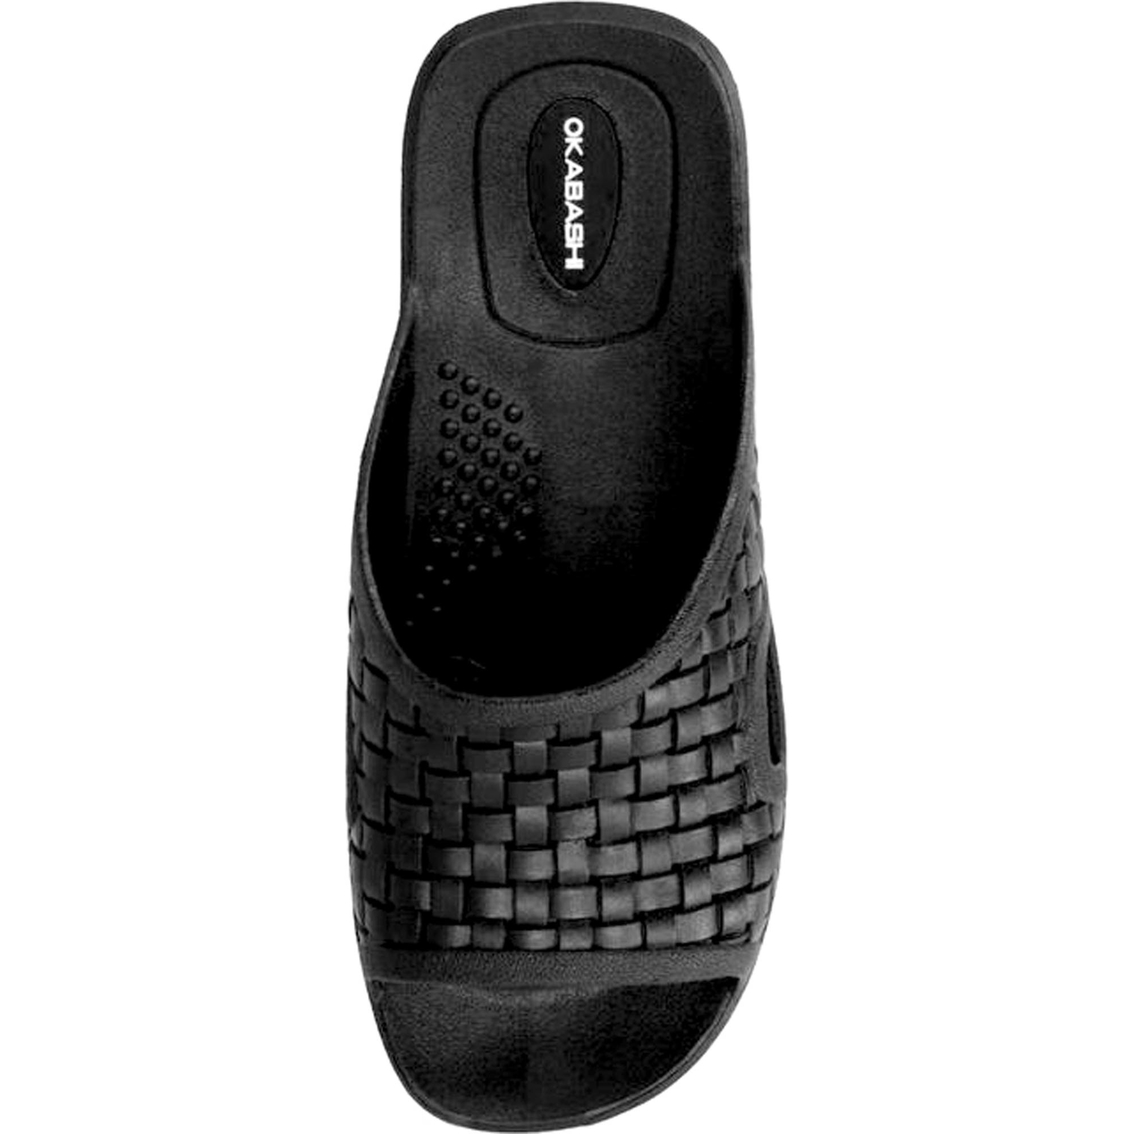 Skechers Women's Squad SR Slip On Slip Resistant Shoes - Image 2 of 2